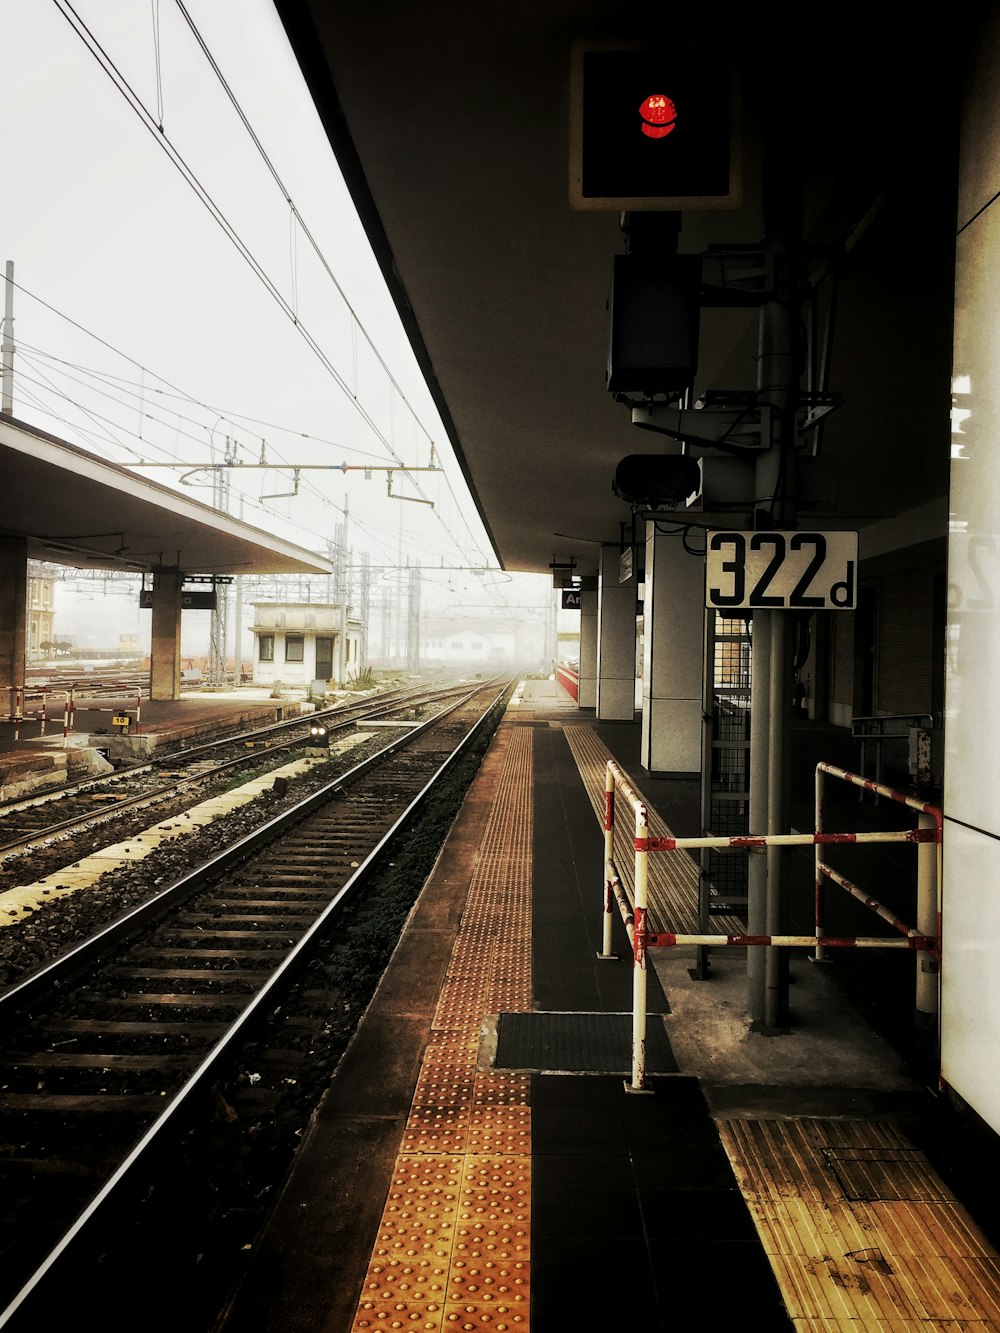 trem ferroviário na estação de trem